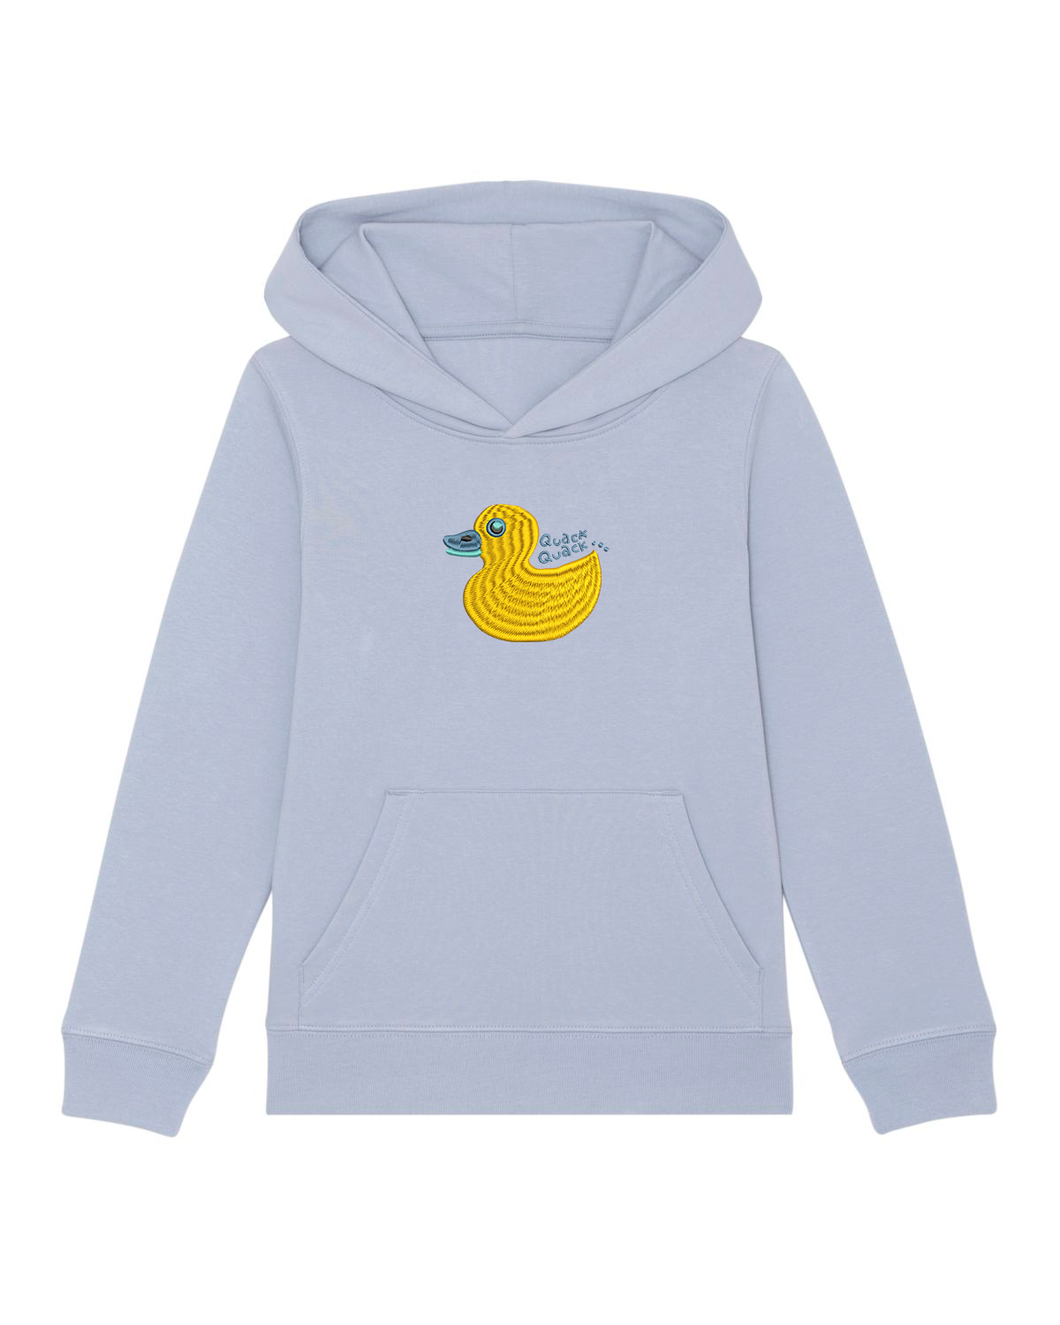 Quack, Quack 🦆 - Embroidered UNISEX KIDS hoodie